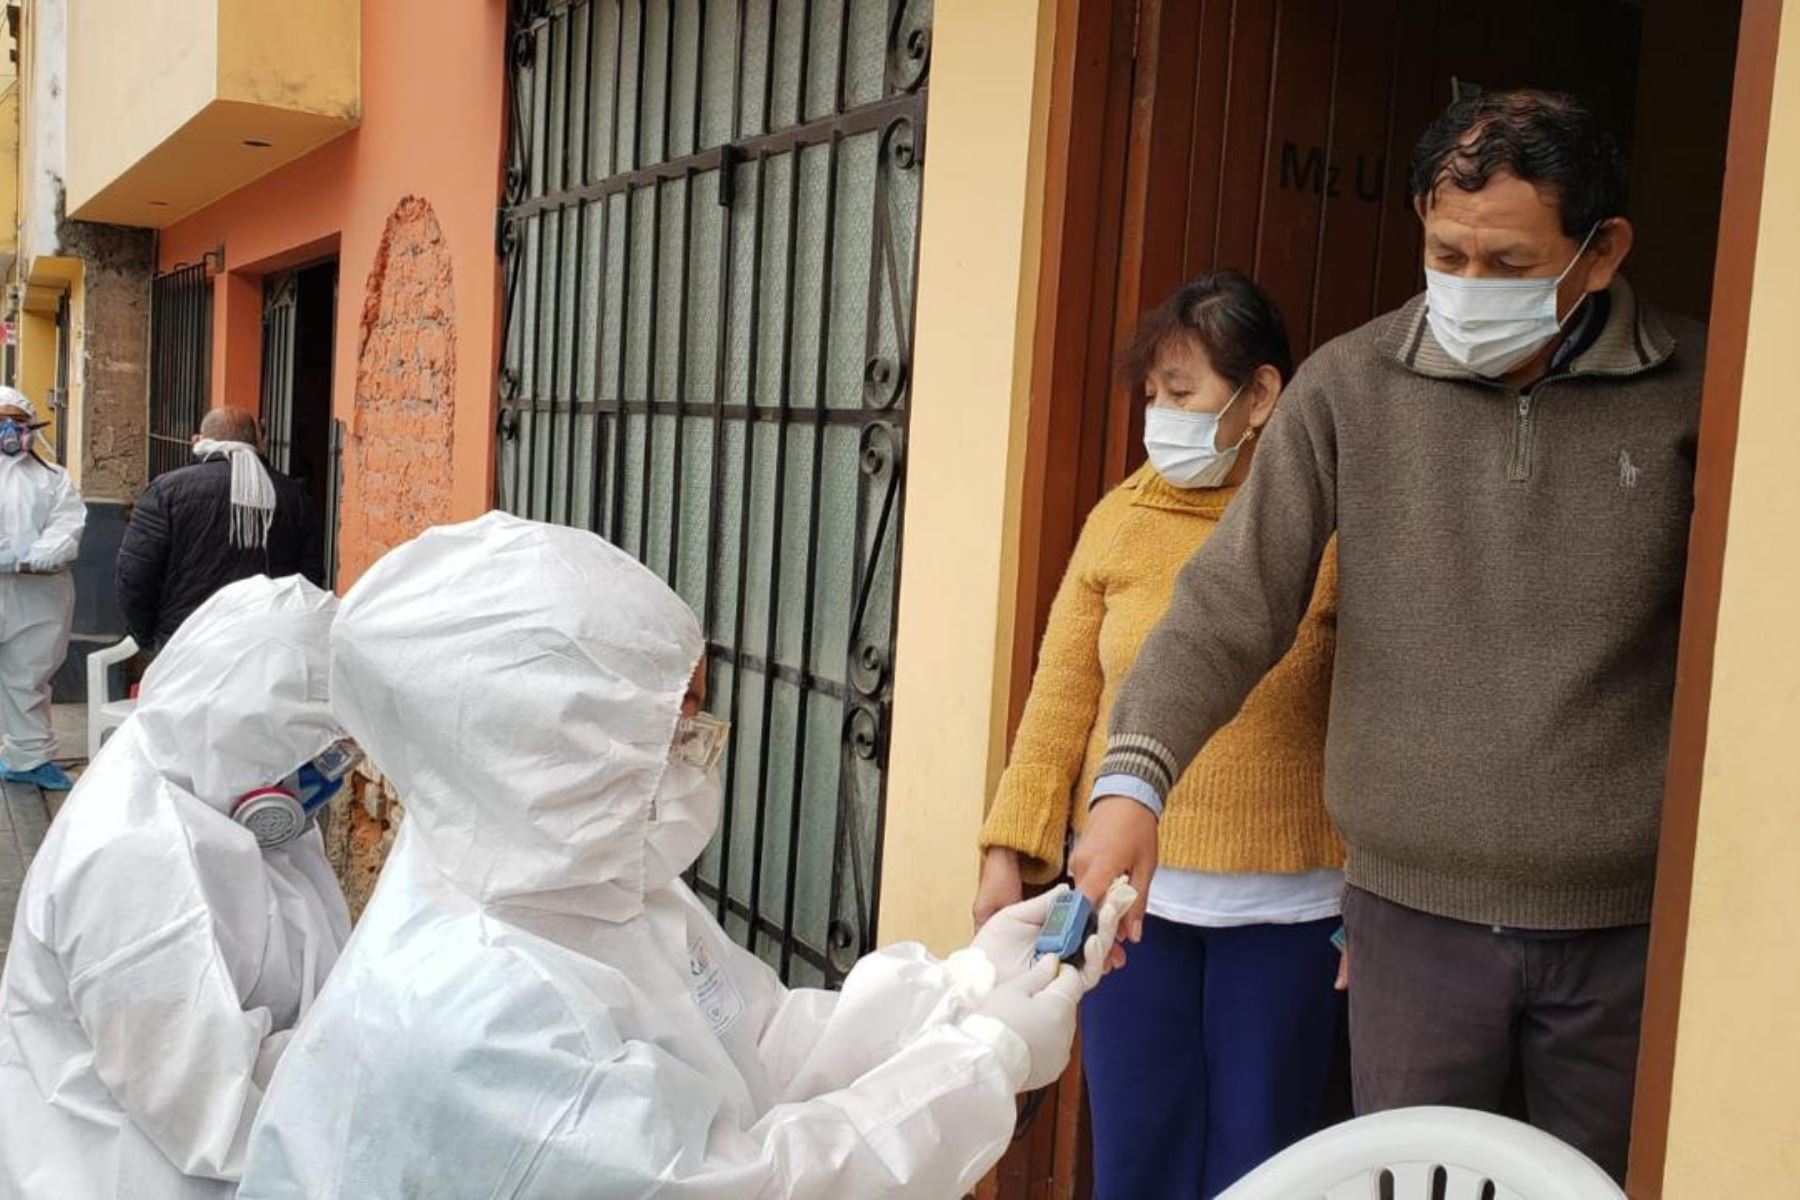 “Basta que un familiar en casa esté infectado para que la posibilidad de contagio se dispare", advierte el infectólogo. Foto: MINSA